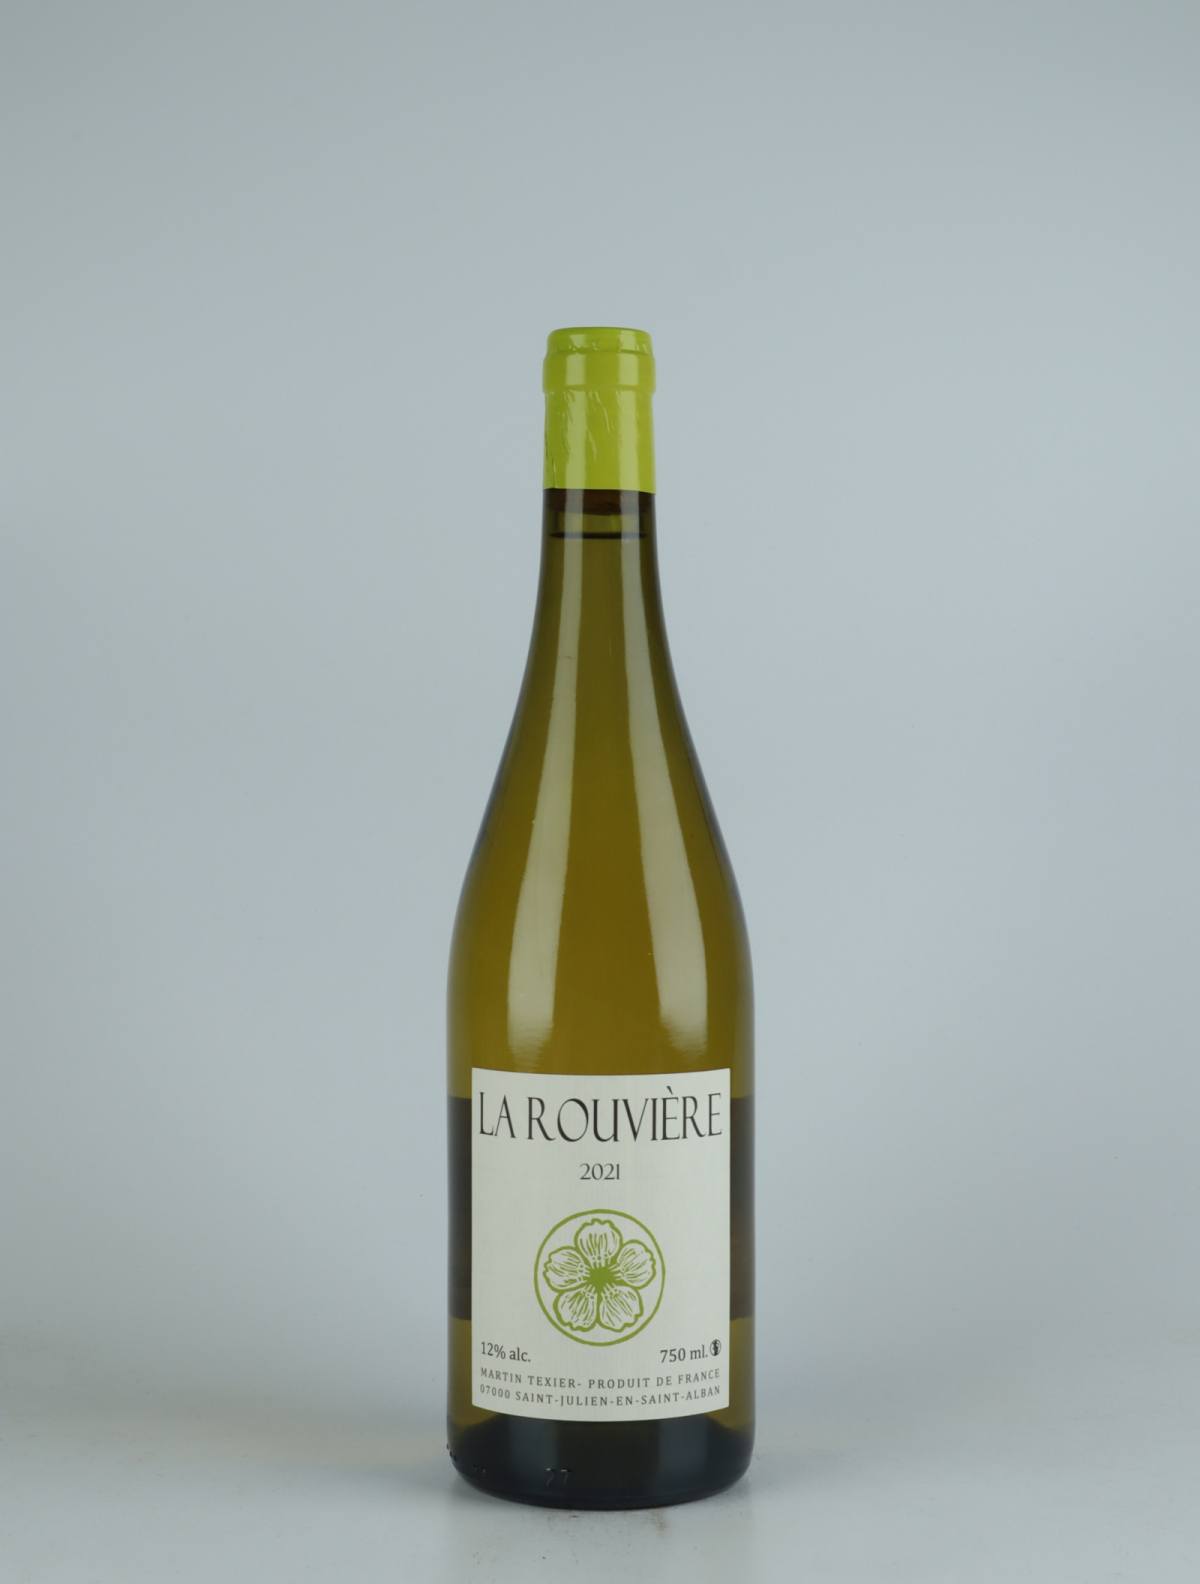 A bottle 2021 La Rouvière White wine from Martin Texier, Rhône in France